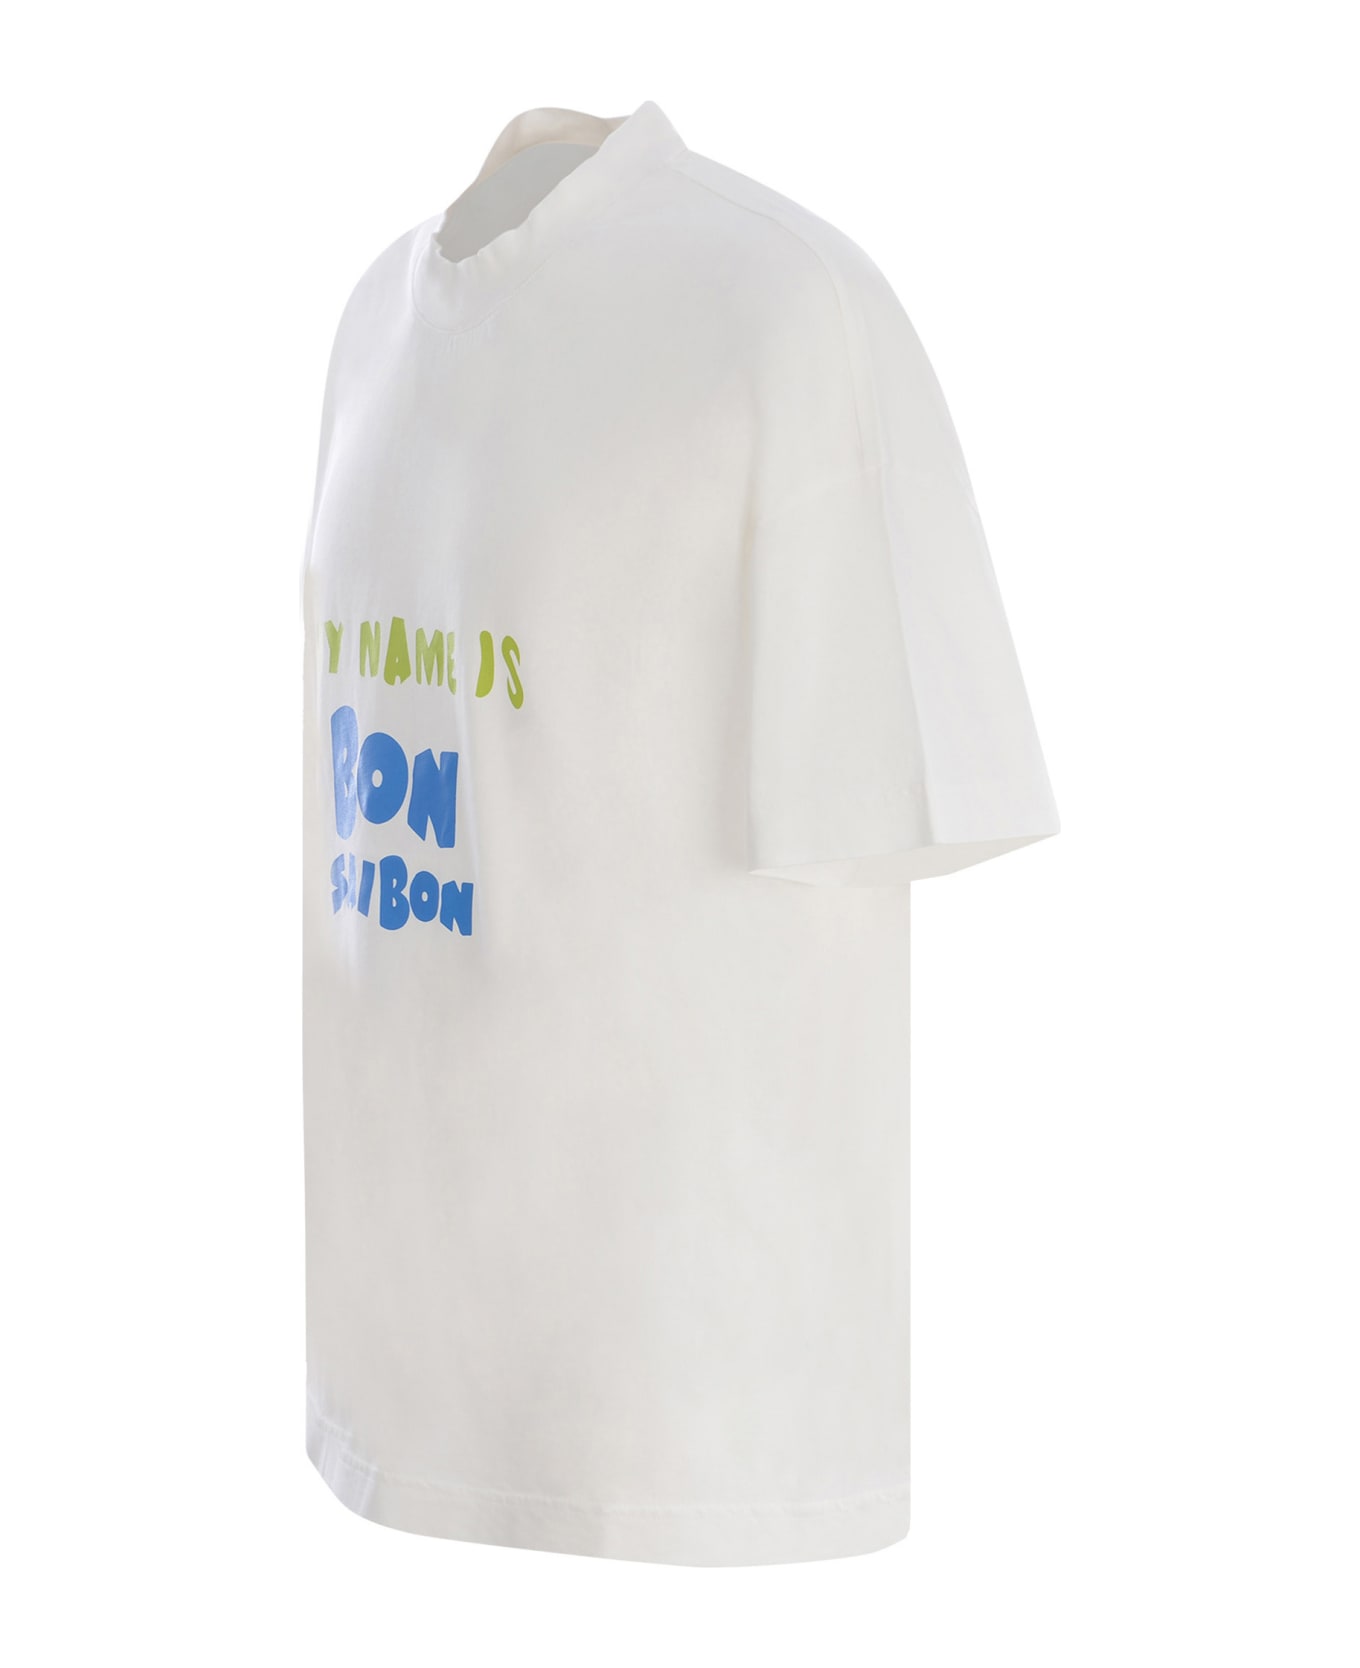 Bonsai T-shirt Bonsai "saibon" In Cotton - Bianco